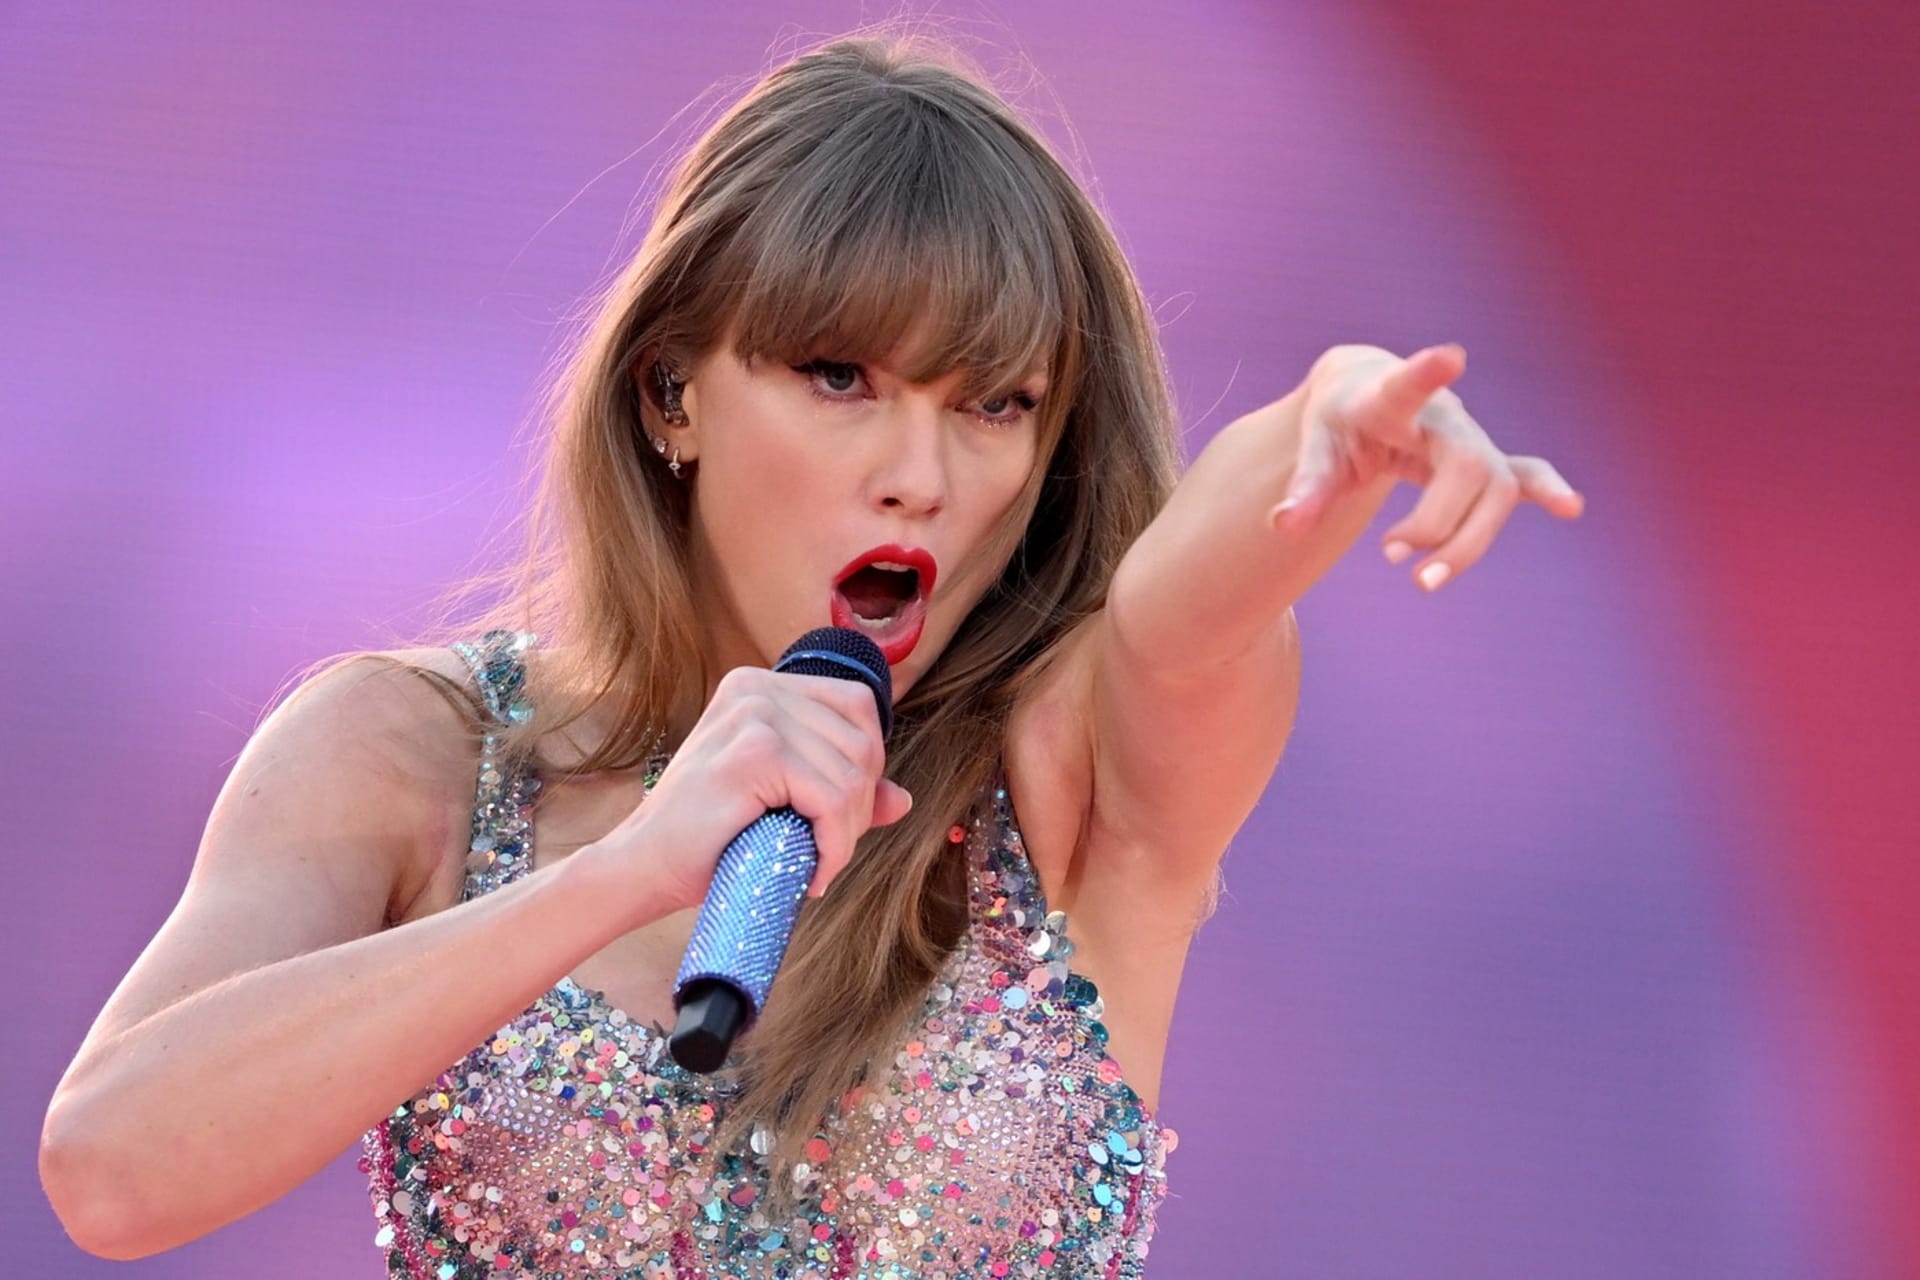 Turné The Eras Tour Taylor Swift má nakročeno k tomu, aby se stalo nejúspěšnější hudební tour v historii.